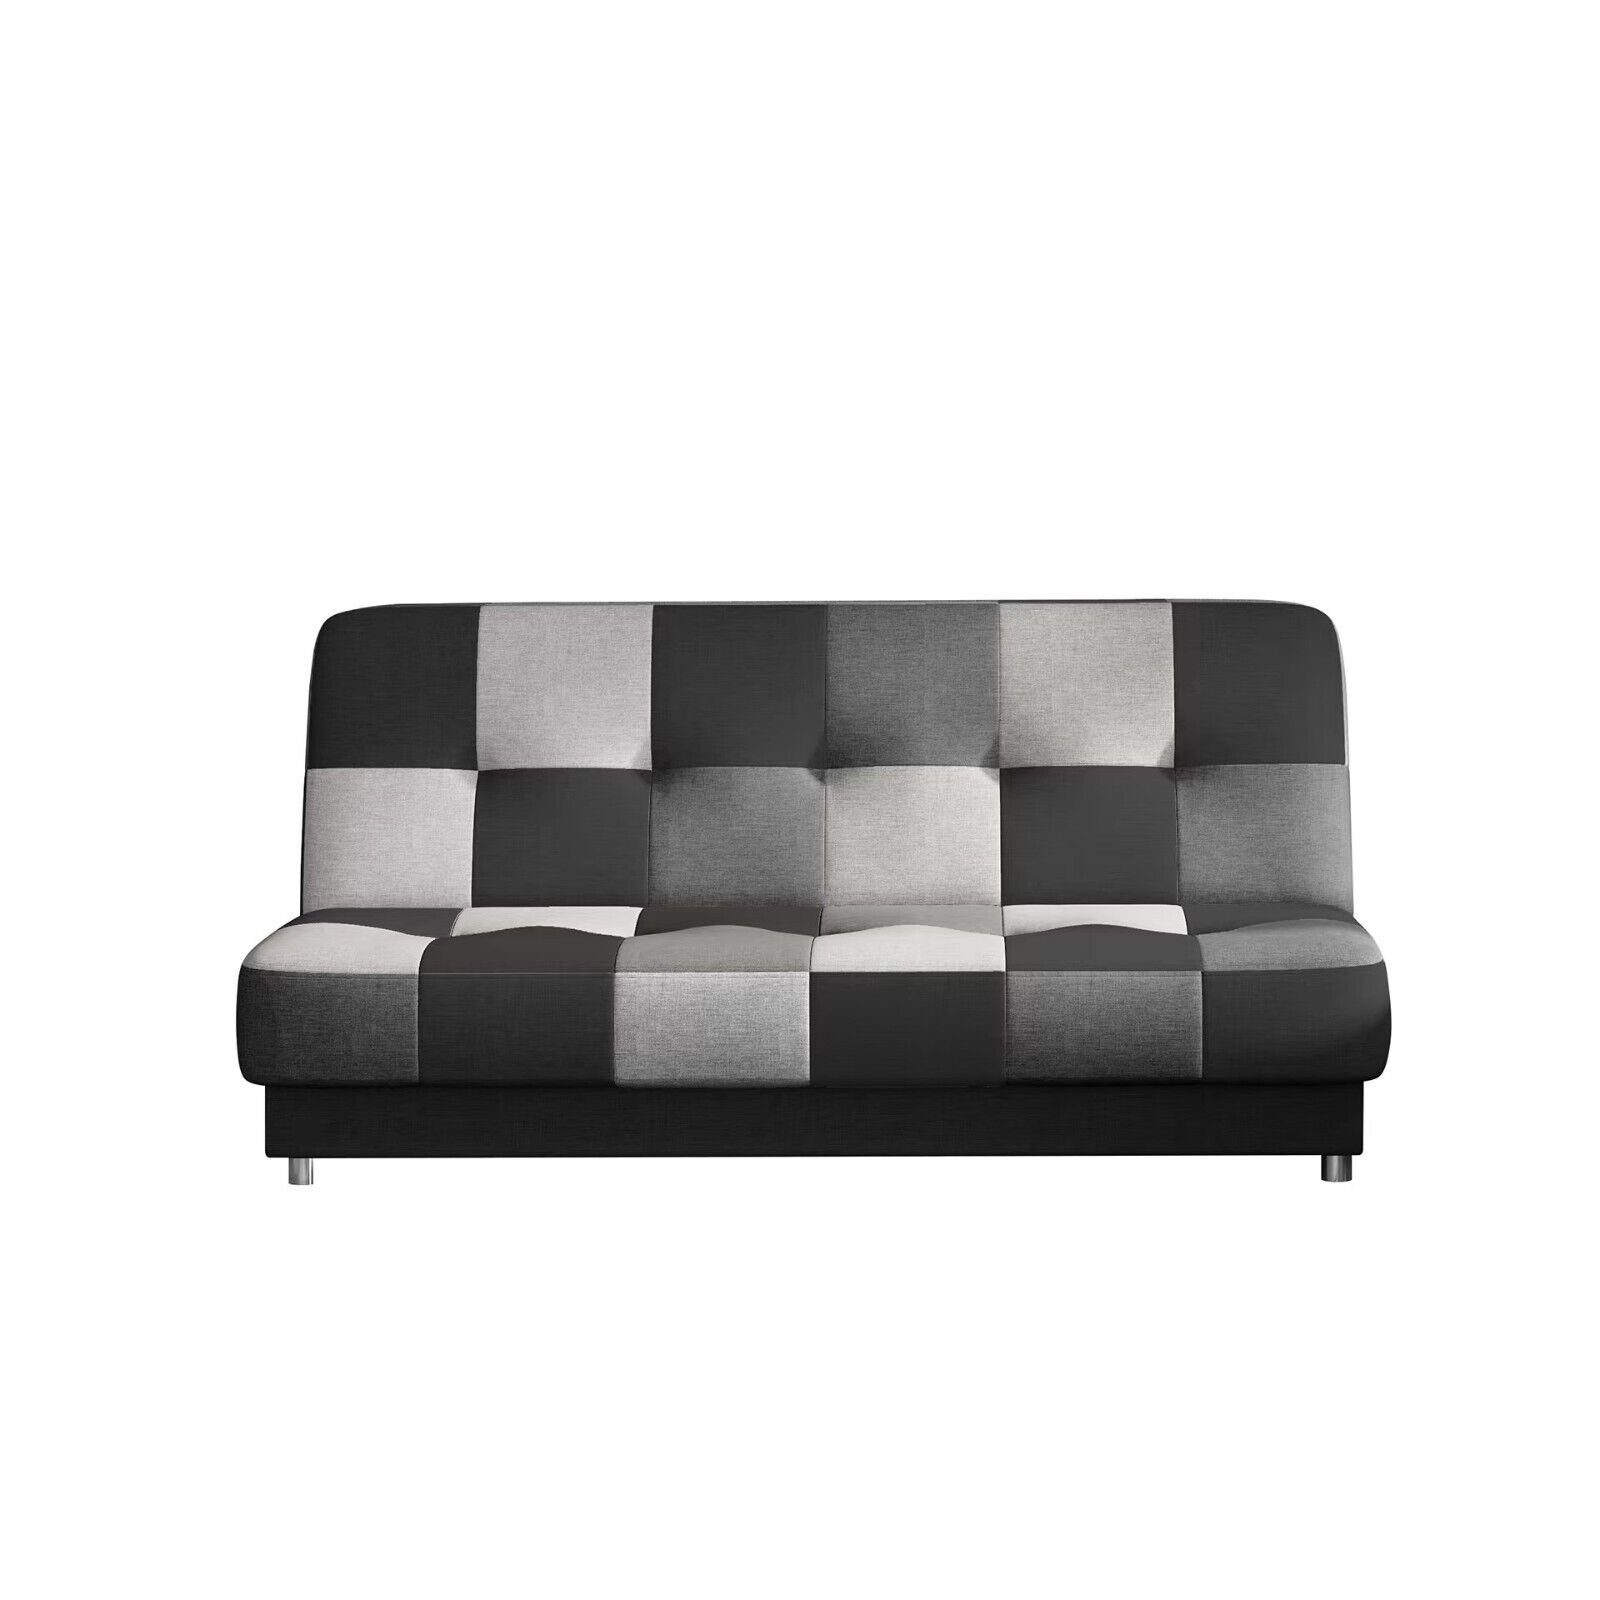 Luxus 1 Textil Wohnzimmer Schlafsofa Sofa JVmoebel Couch Made Sofort, in Modern Europa Teile, Wohnlandschaft